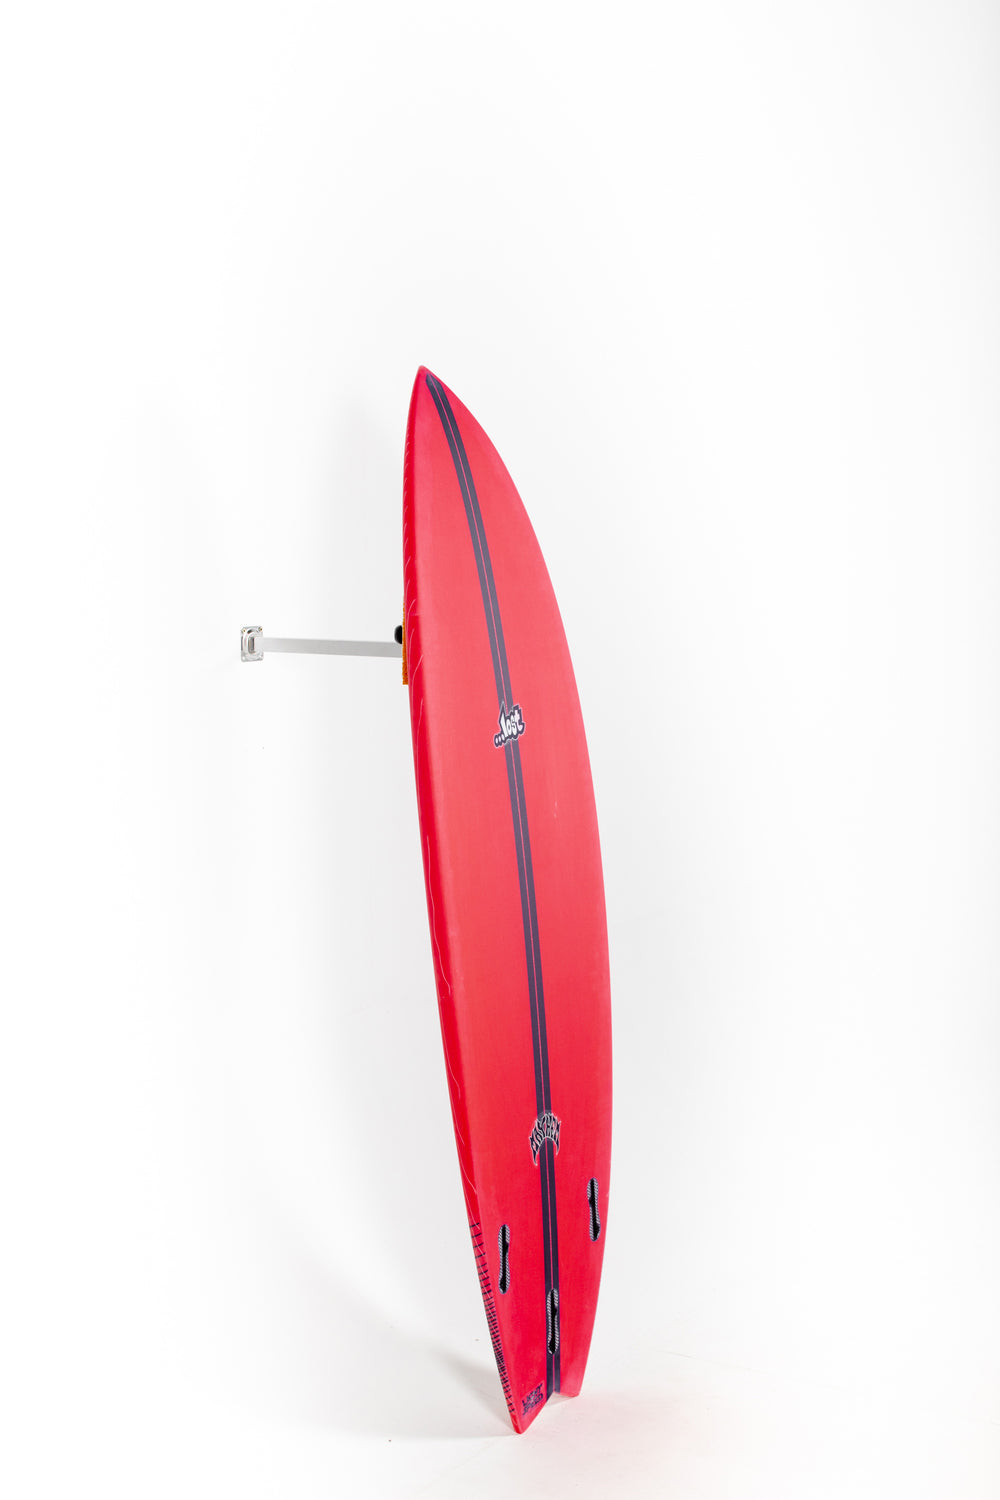 Lost Surfboard RNF 96 by Matt Biolos at PUKAS SURF SHOP